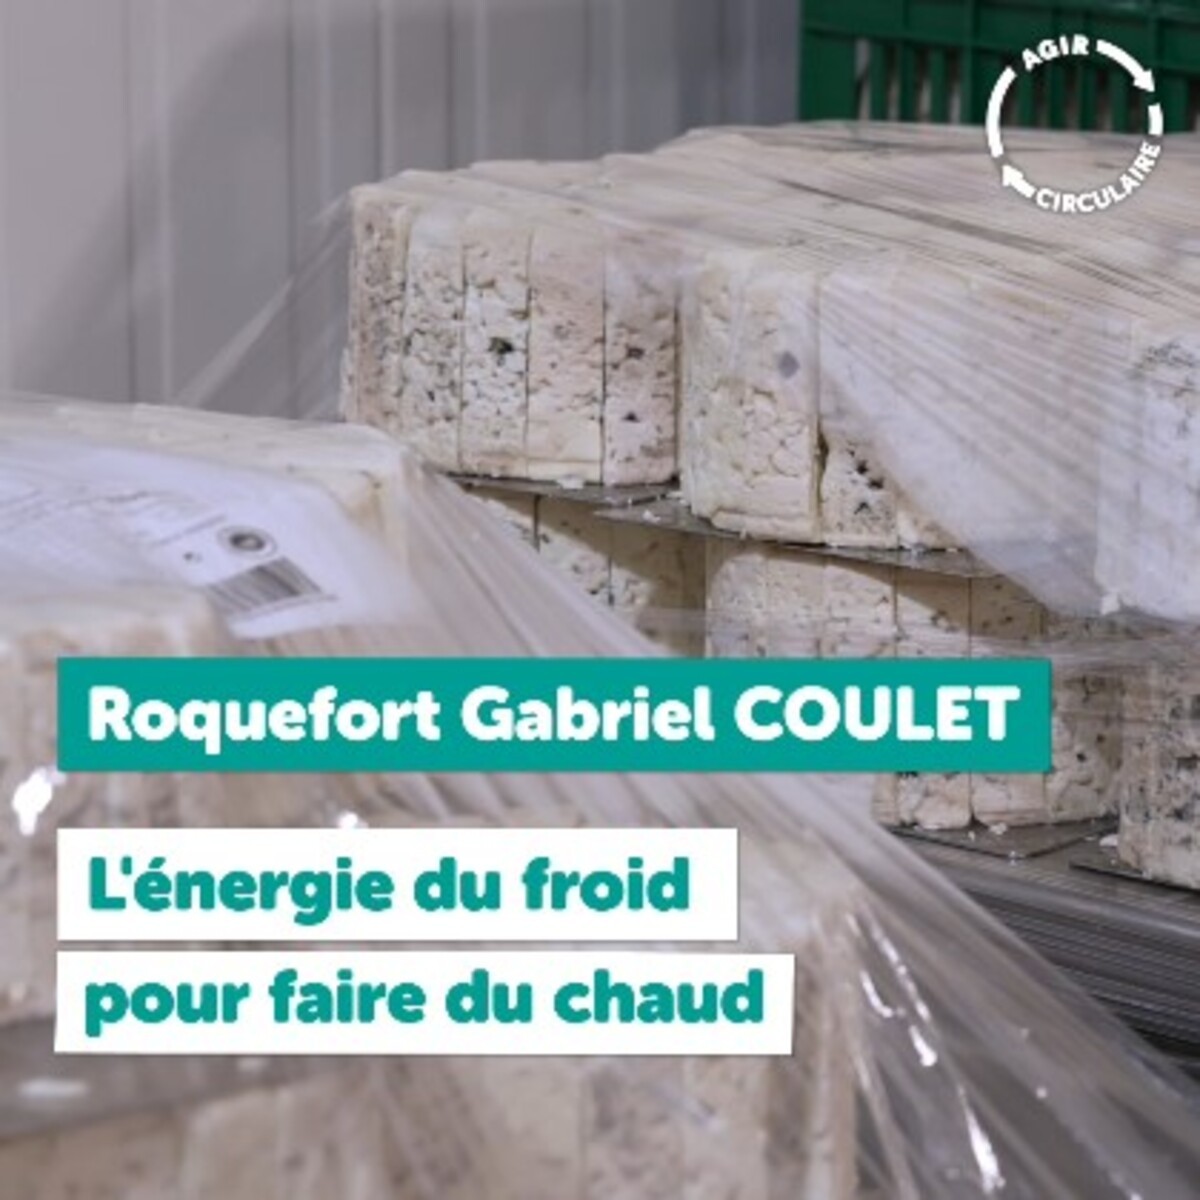 Web série AGIR CIRCULAIRE - Ep10 - Roquefort Gabriel Coulet